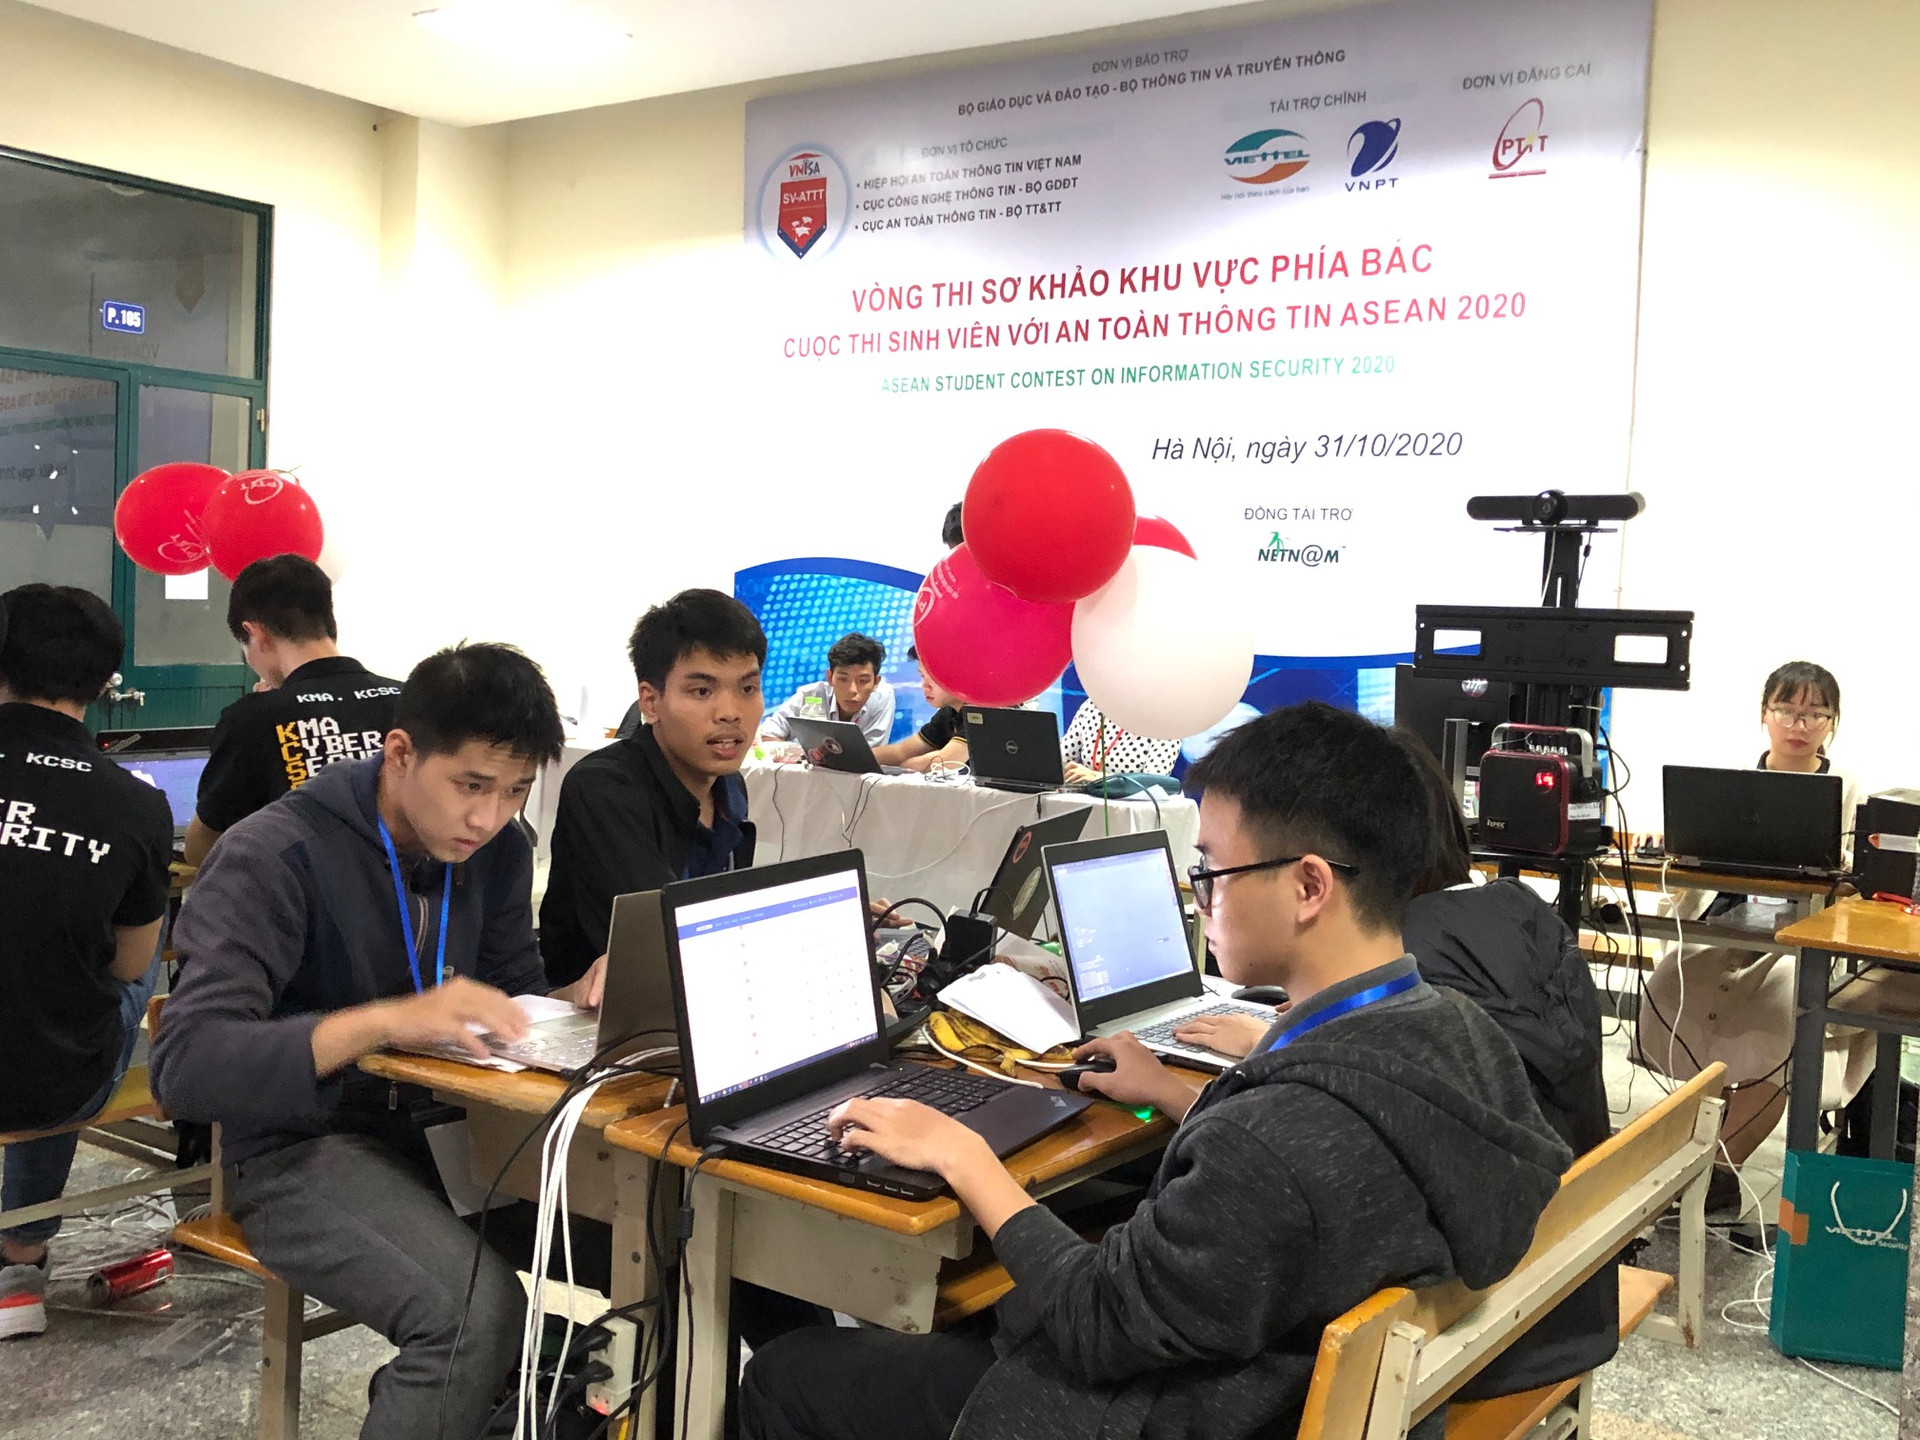 10 đội của Việt Nam vào chung khảo cuộc thi sinh viên với ATTT ASEAN năm 2020 - Ảnh 7.